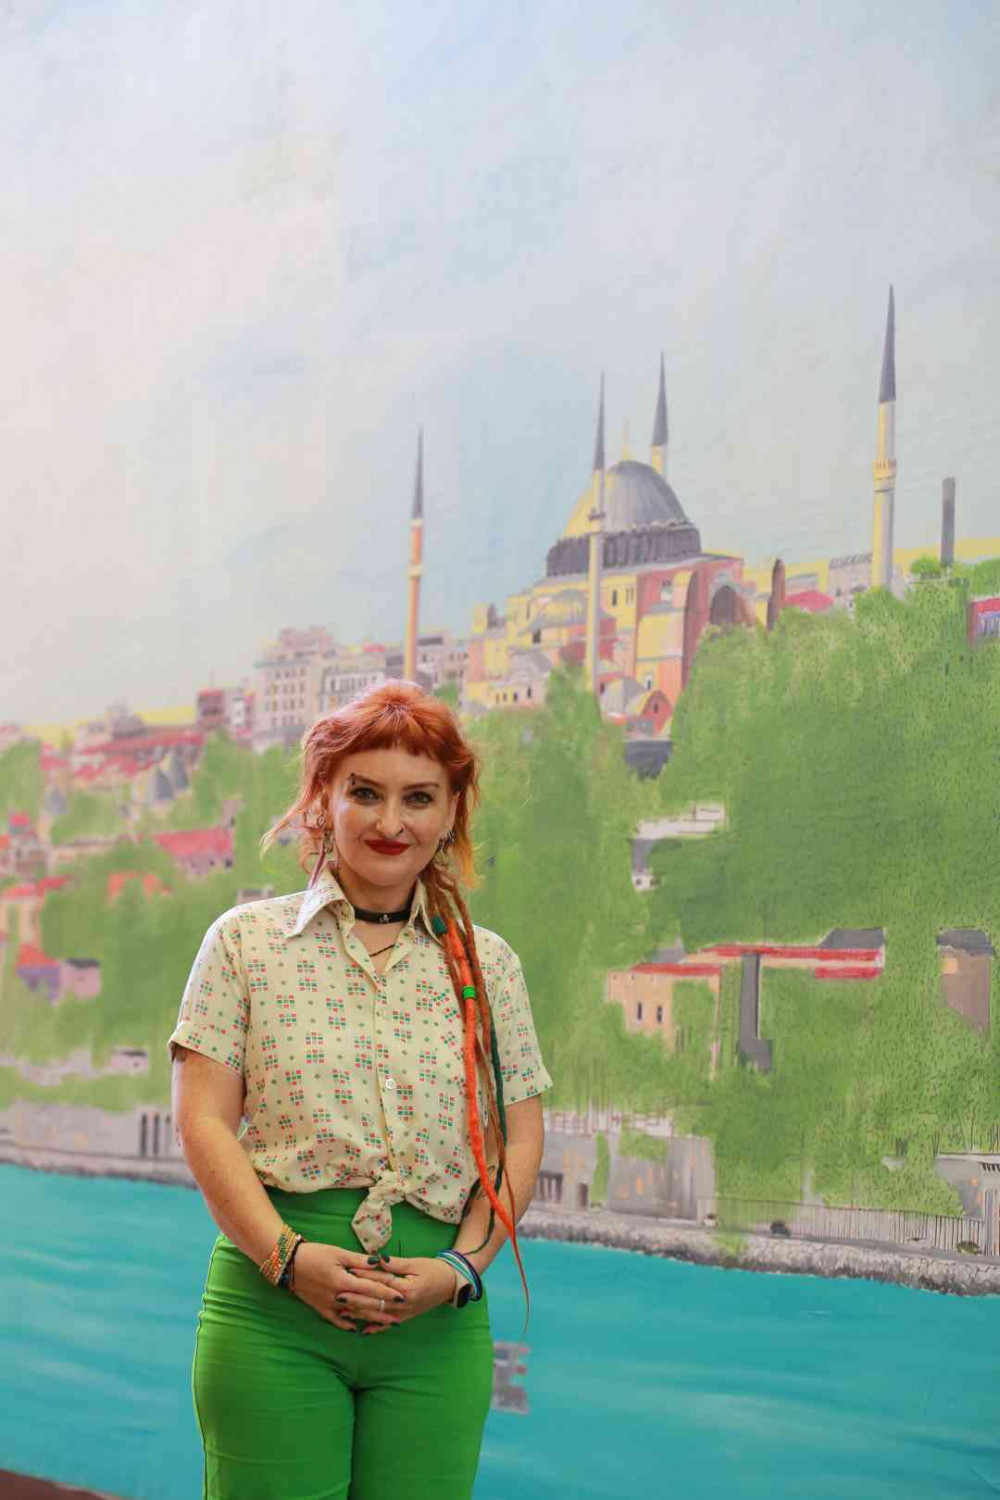 Türk  Ressamların Turquoise sergisi Londrada sergilenecek